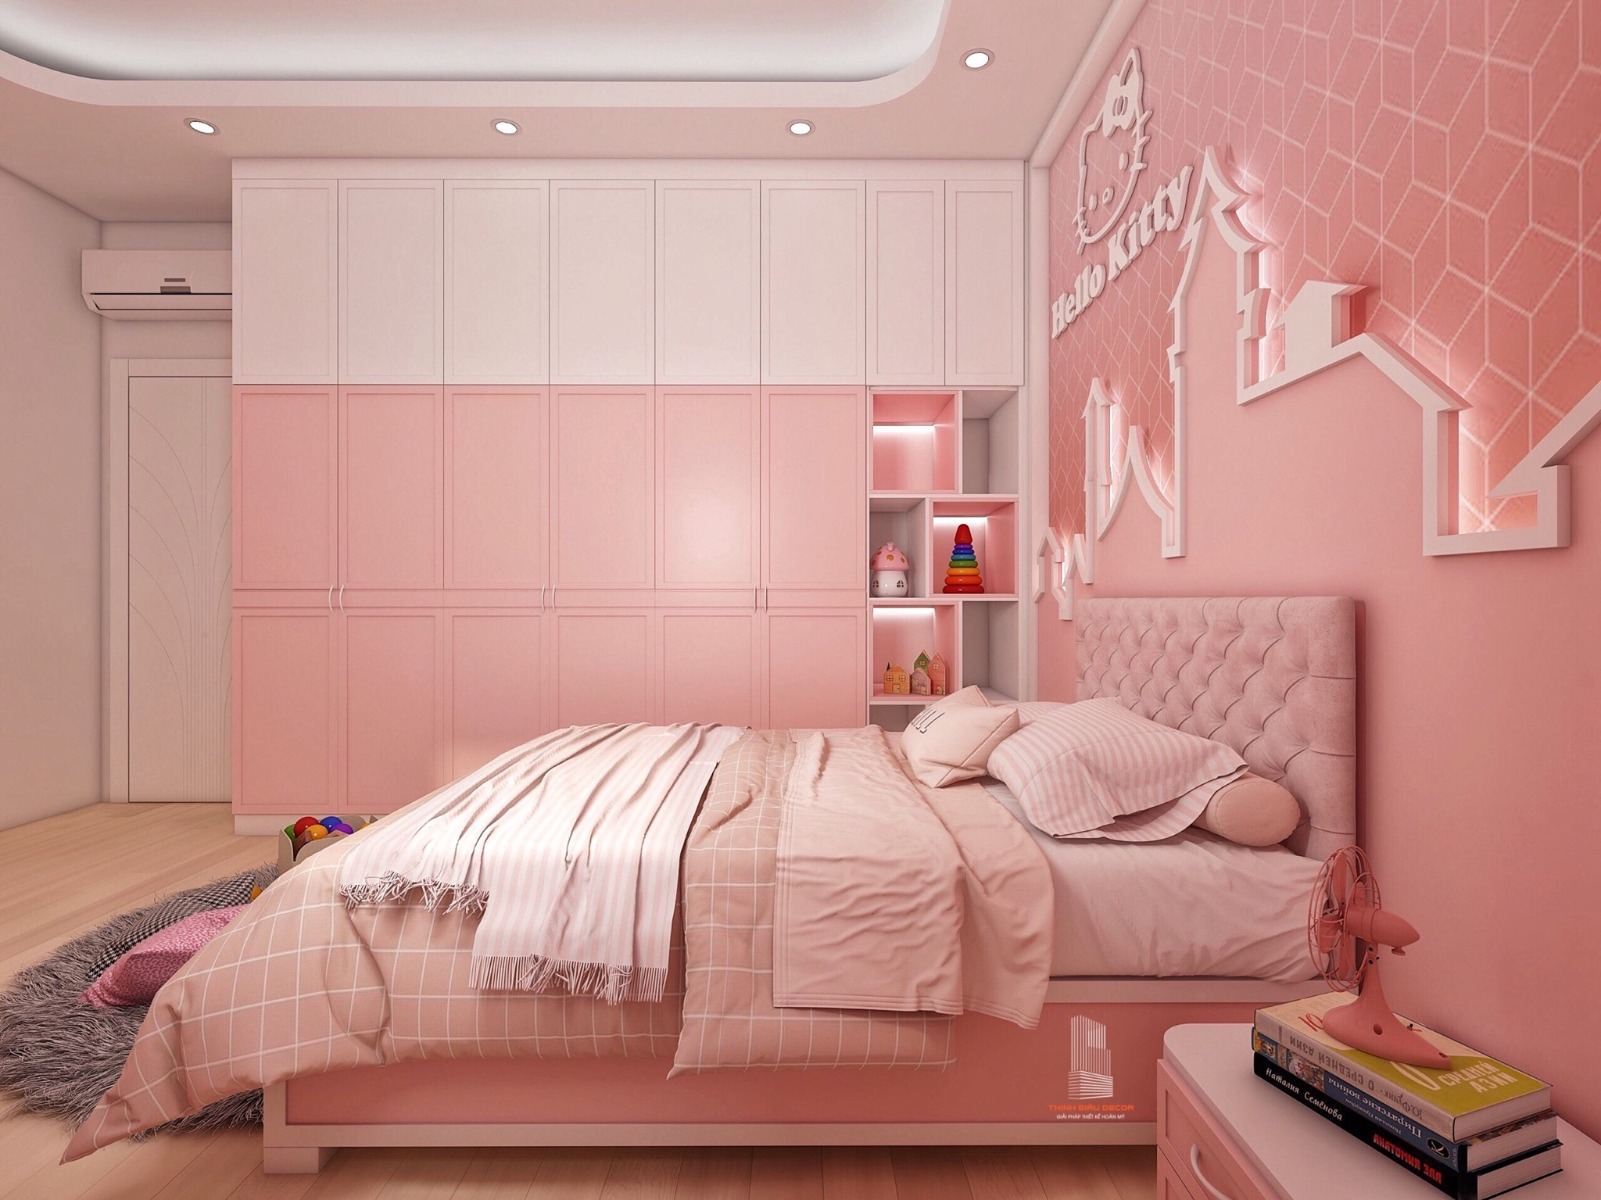 Phòng ngủ màu hồng cute đẹp là lựa chọn hoàn hảo để giúp bạn có những giấc ngủ ngon trên một giường êm ái và bộ chăn ga gối lụa mềm mượt. Với những đồ nội thất nhỏ nhắn như chiếc bàn học màu hồng hay chậu cây để bàn, bạn có thể tạo ra một góc làm việc cực kỳ thú vị và ngọt ngào cho riêng mình.